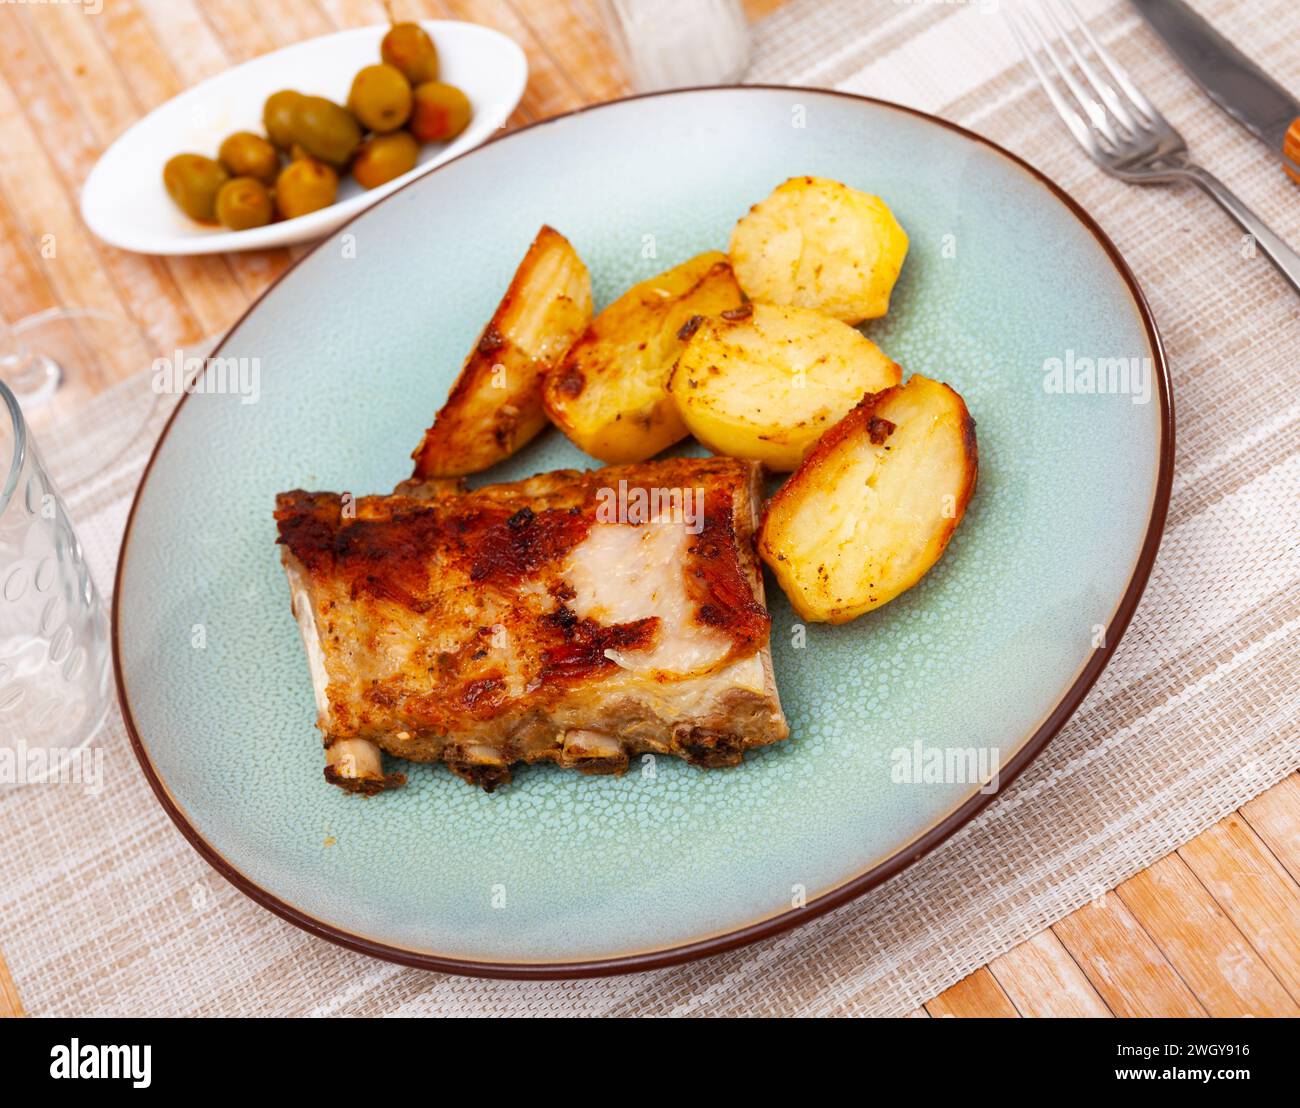 Ccostillas de cerdo - costolette di maiale con patate bollite Foto Stock